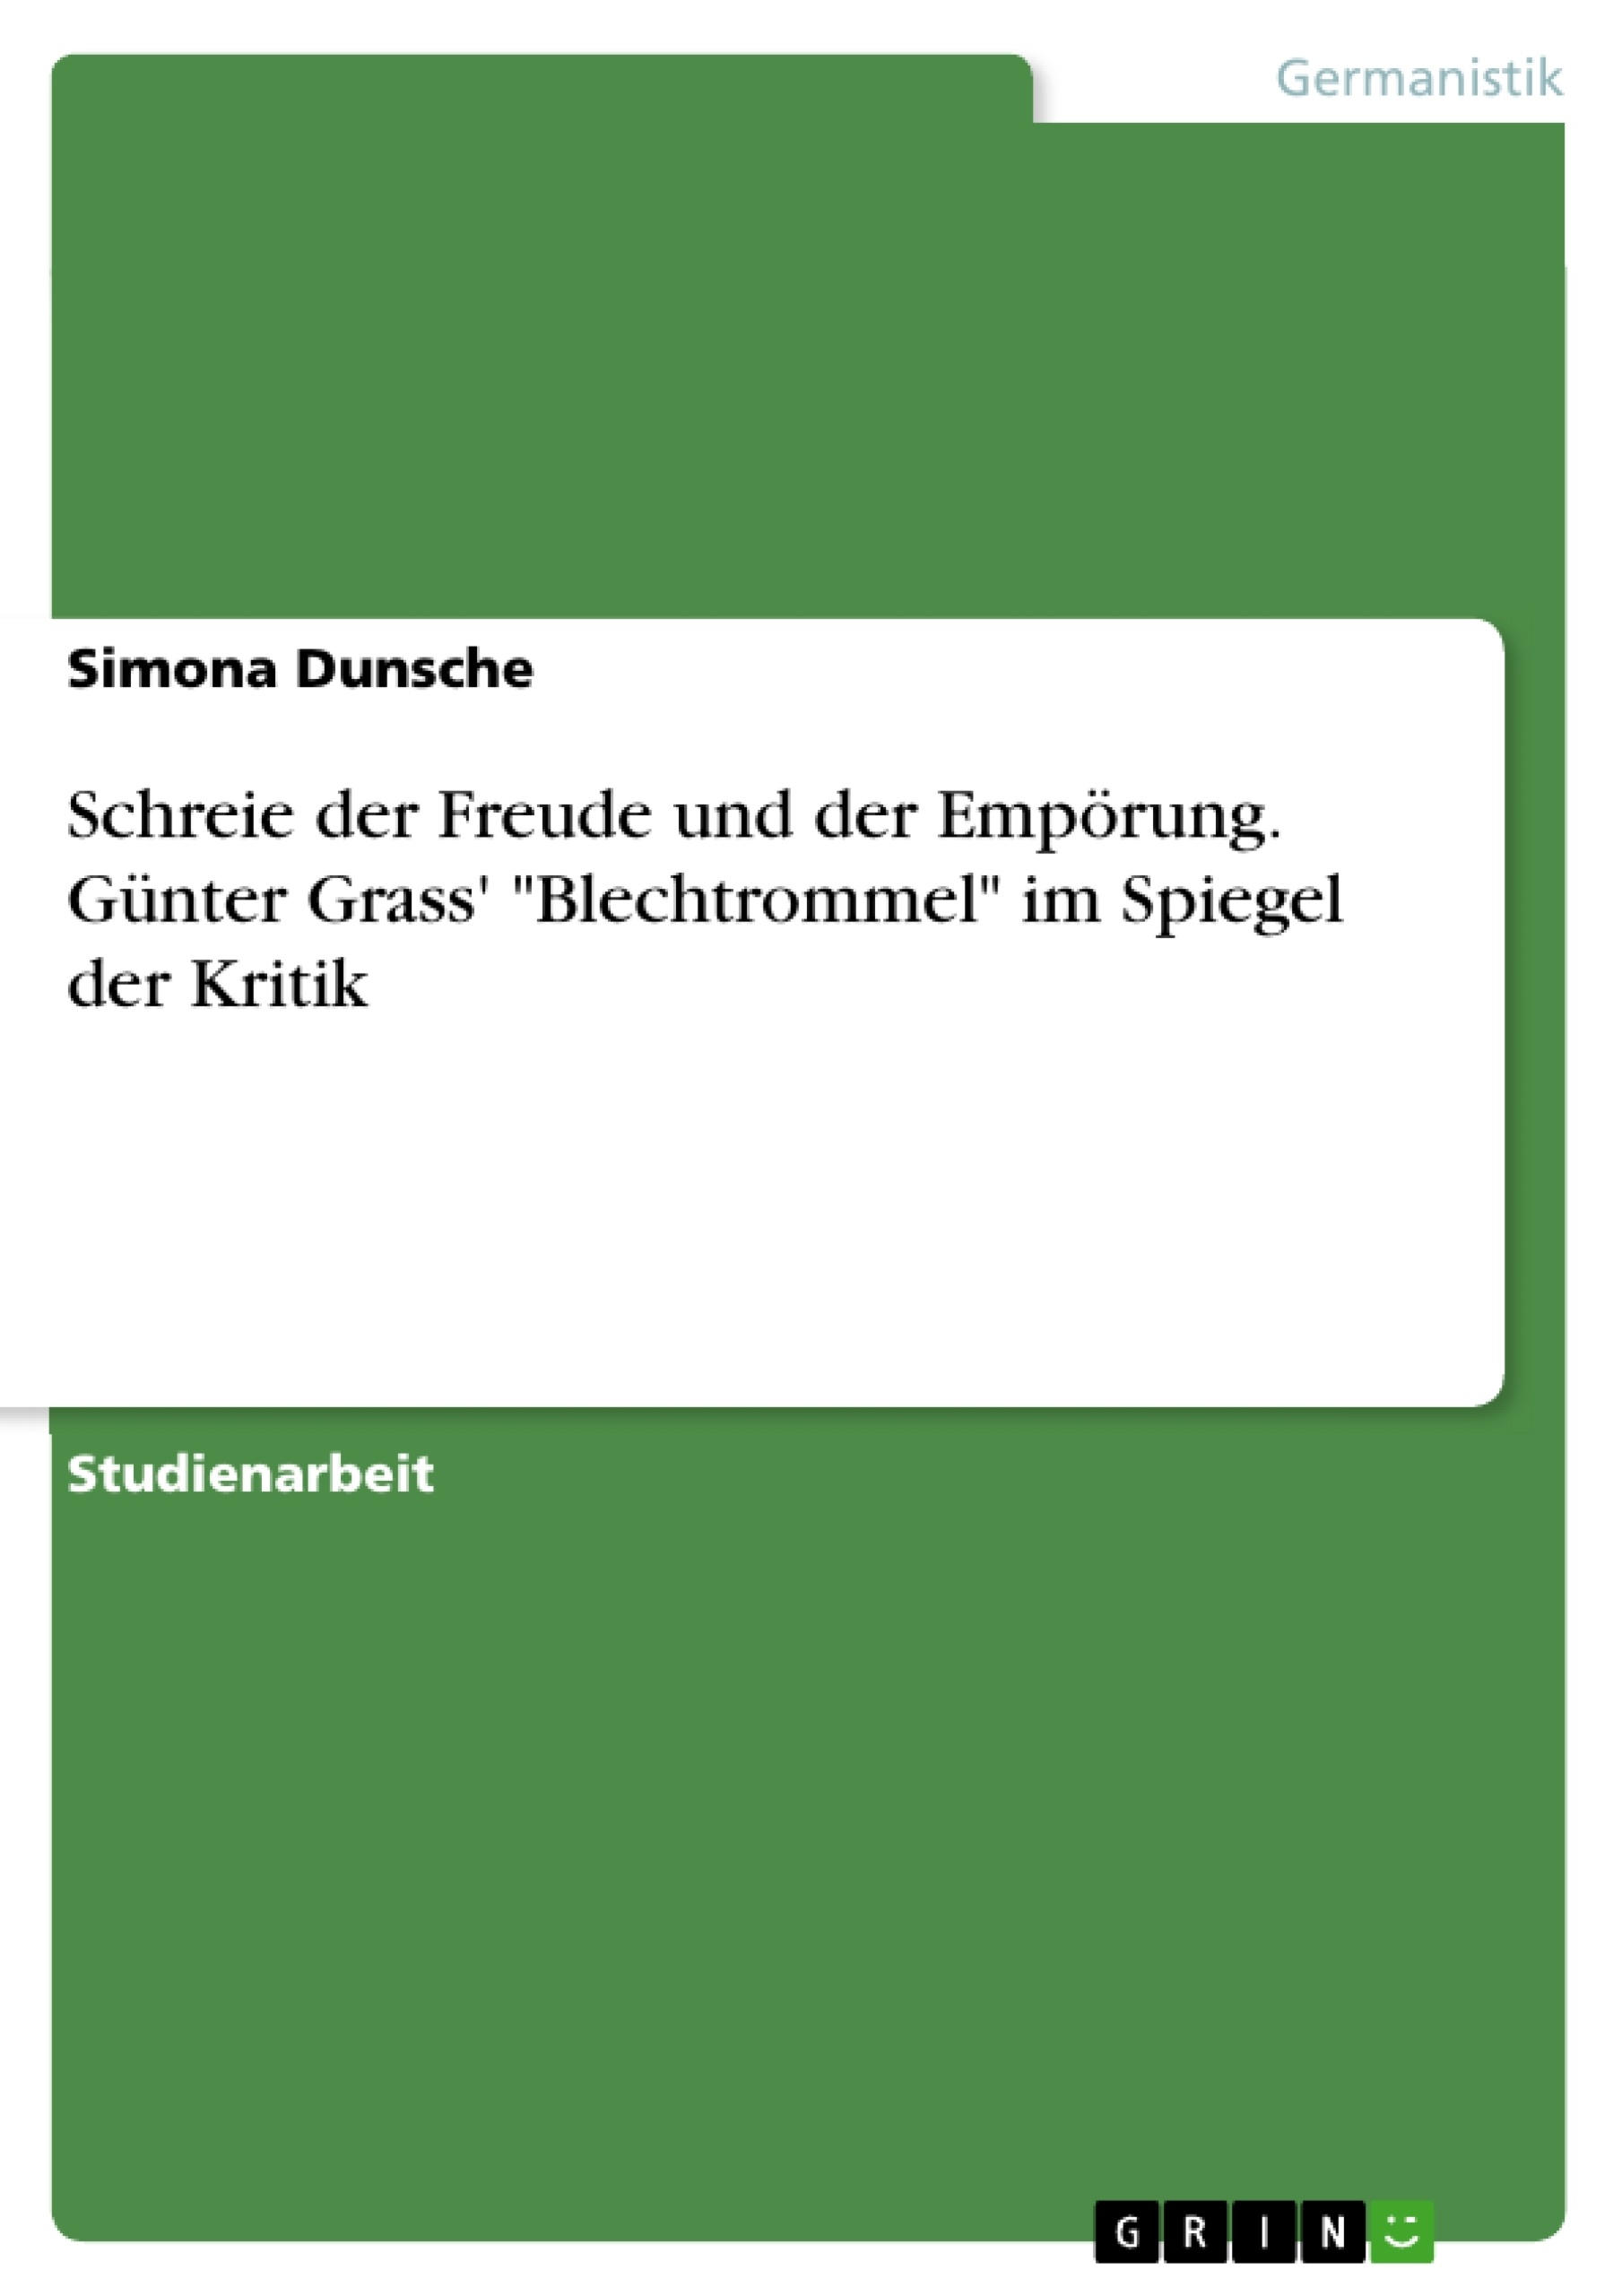 Title: Schreie der Freude und der Empörung. Günter Grass' "Blechtrommel" im Spiegel der Kritik